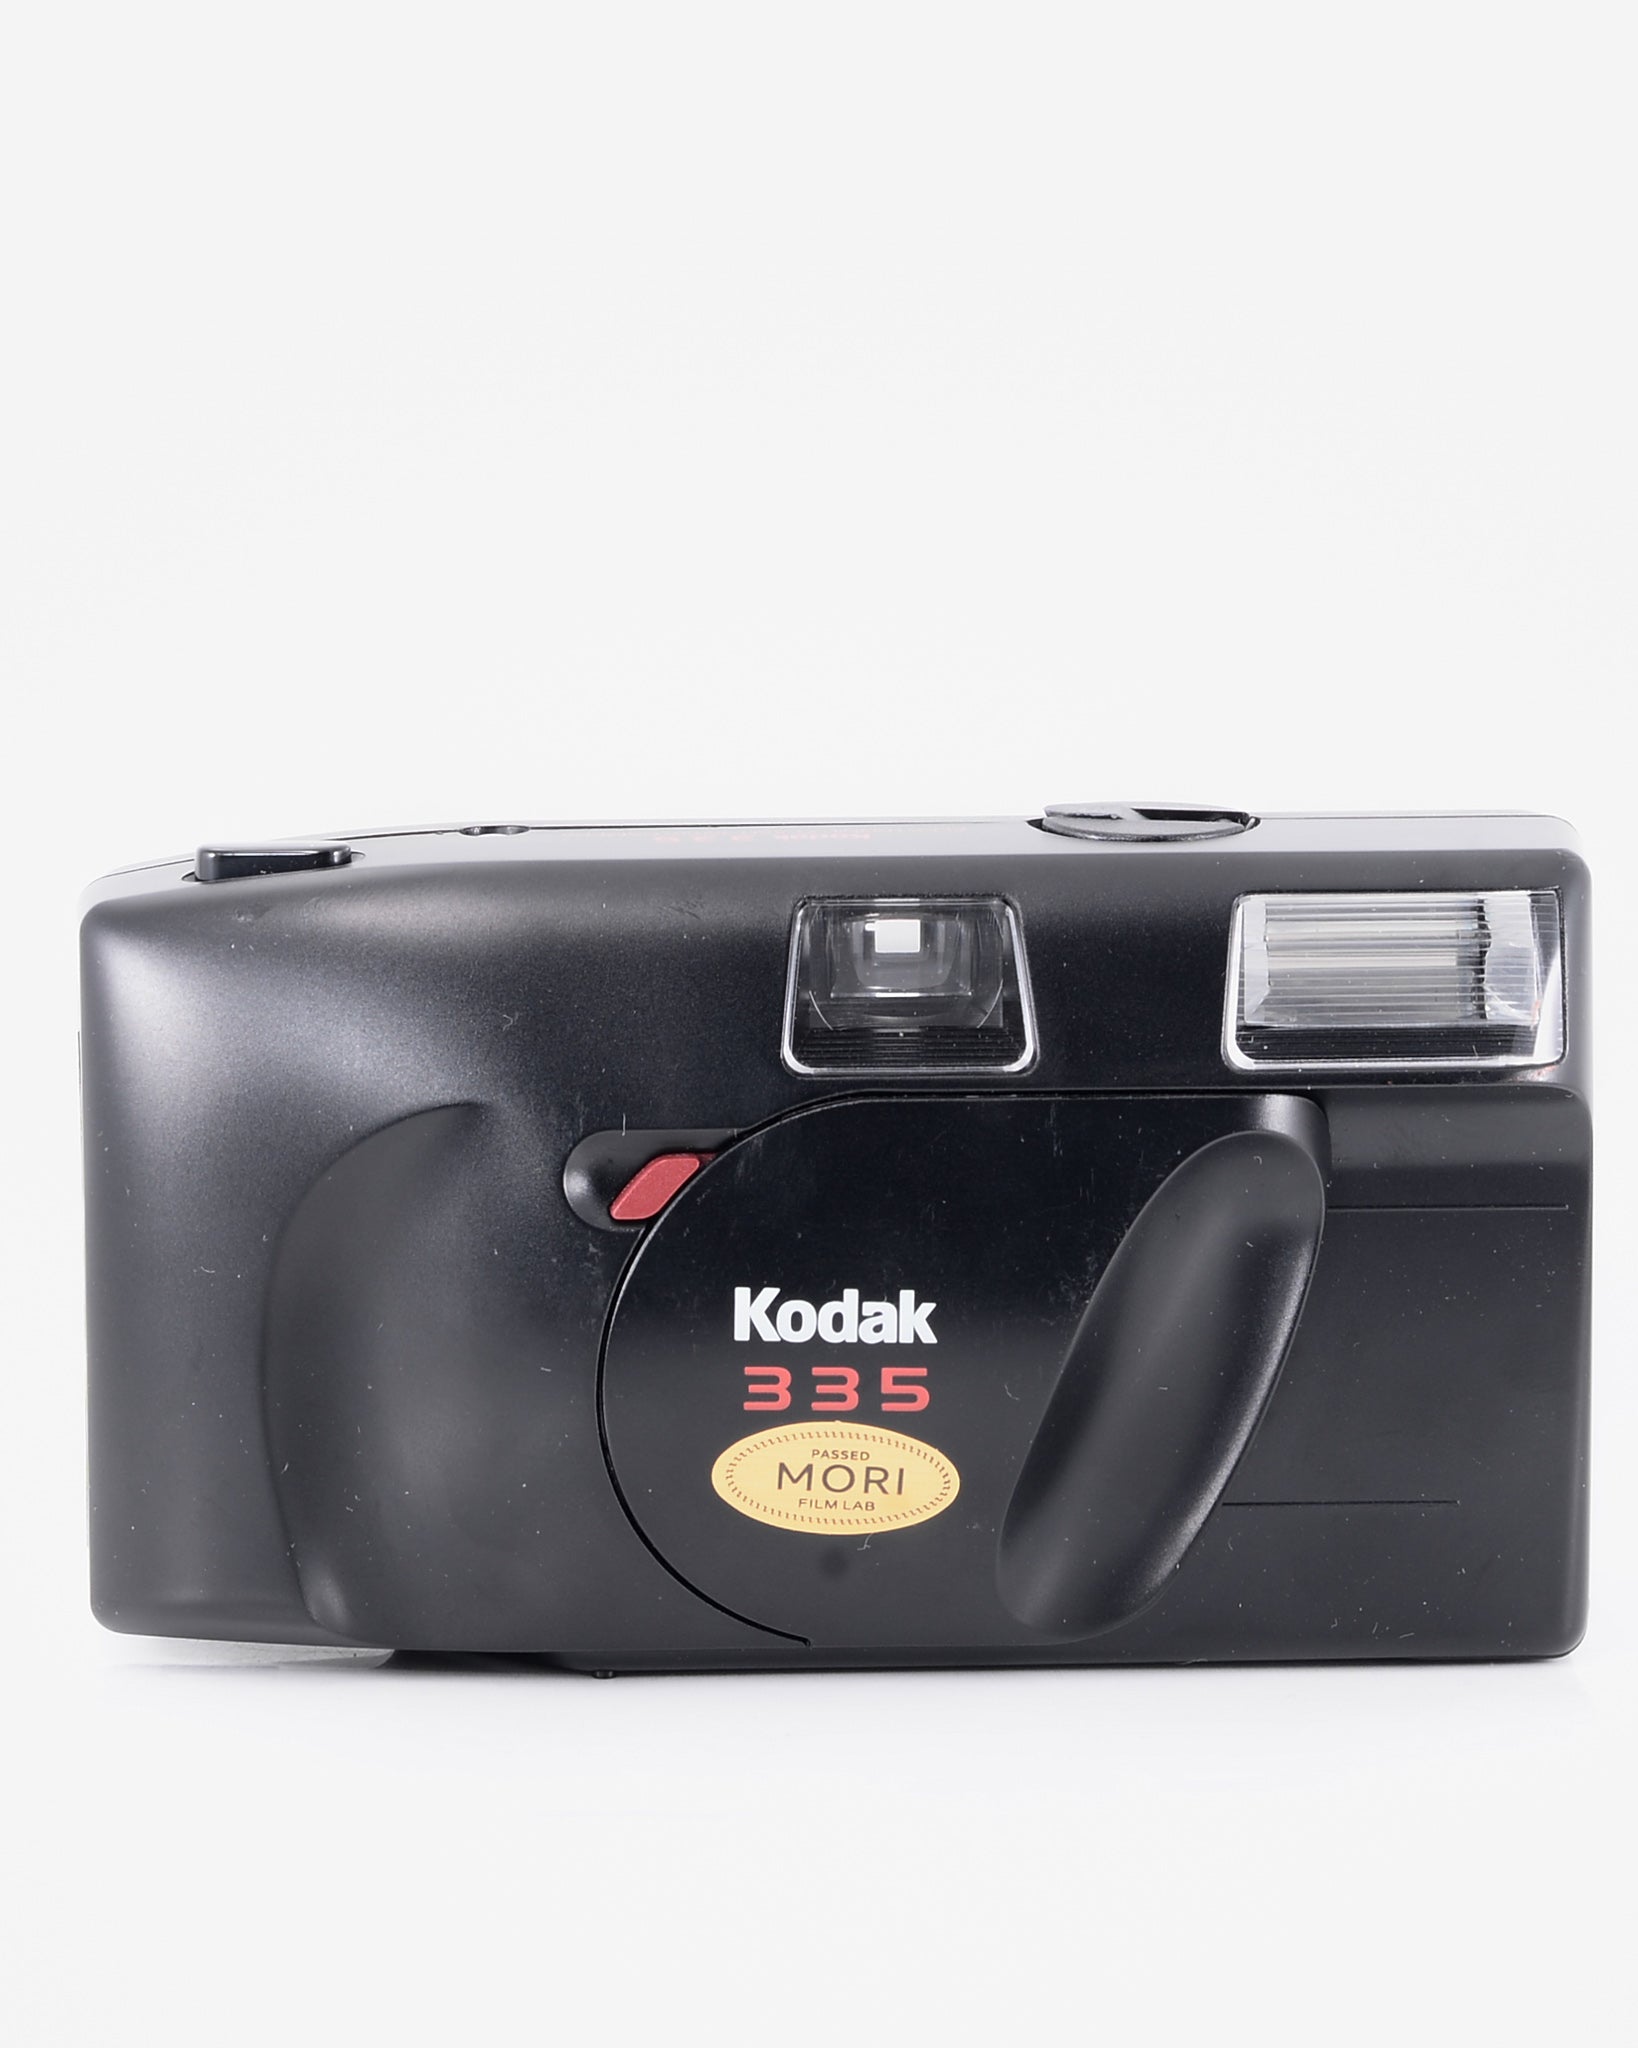 Kodak 335 35mm point & shoot camera